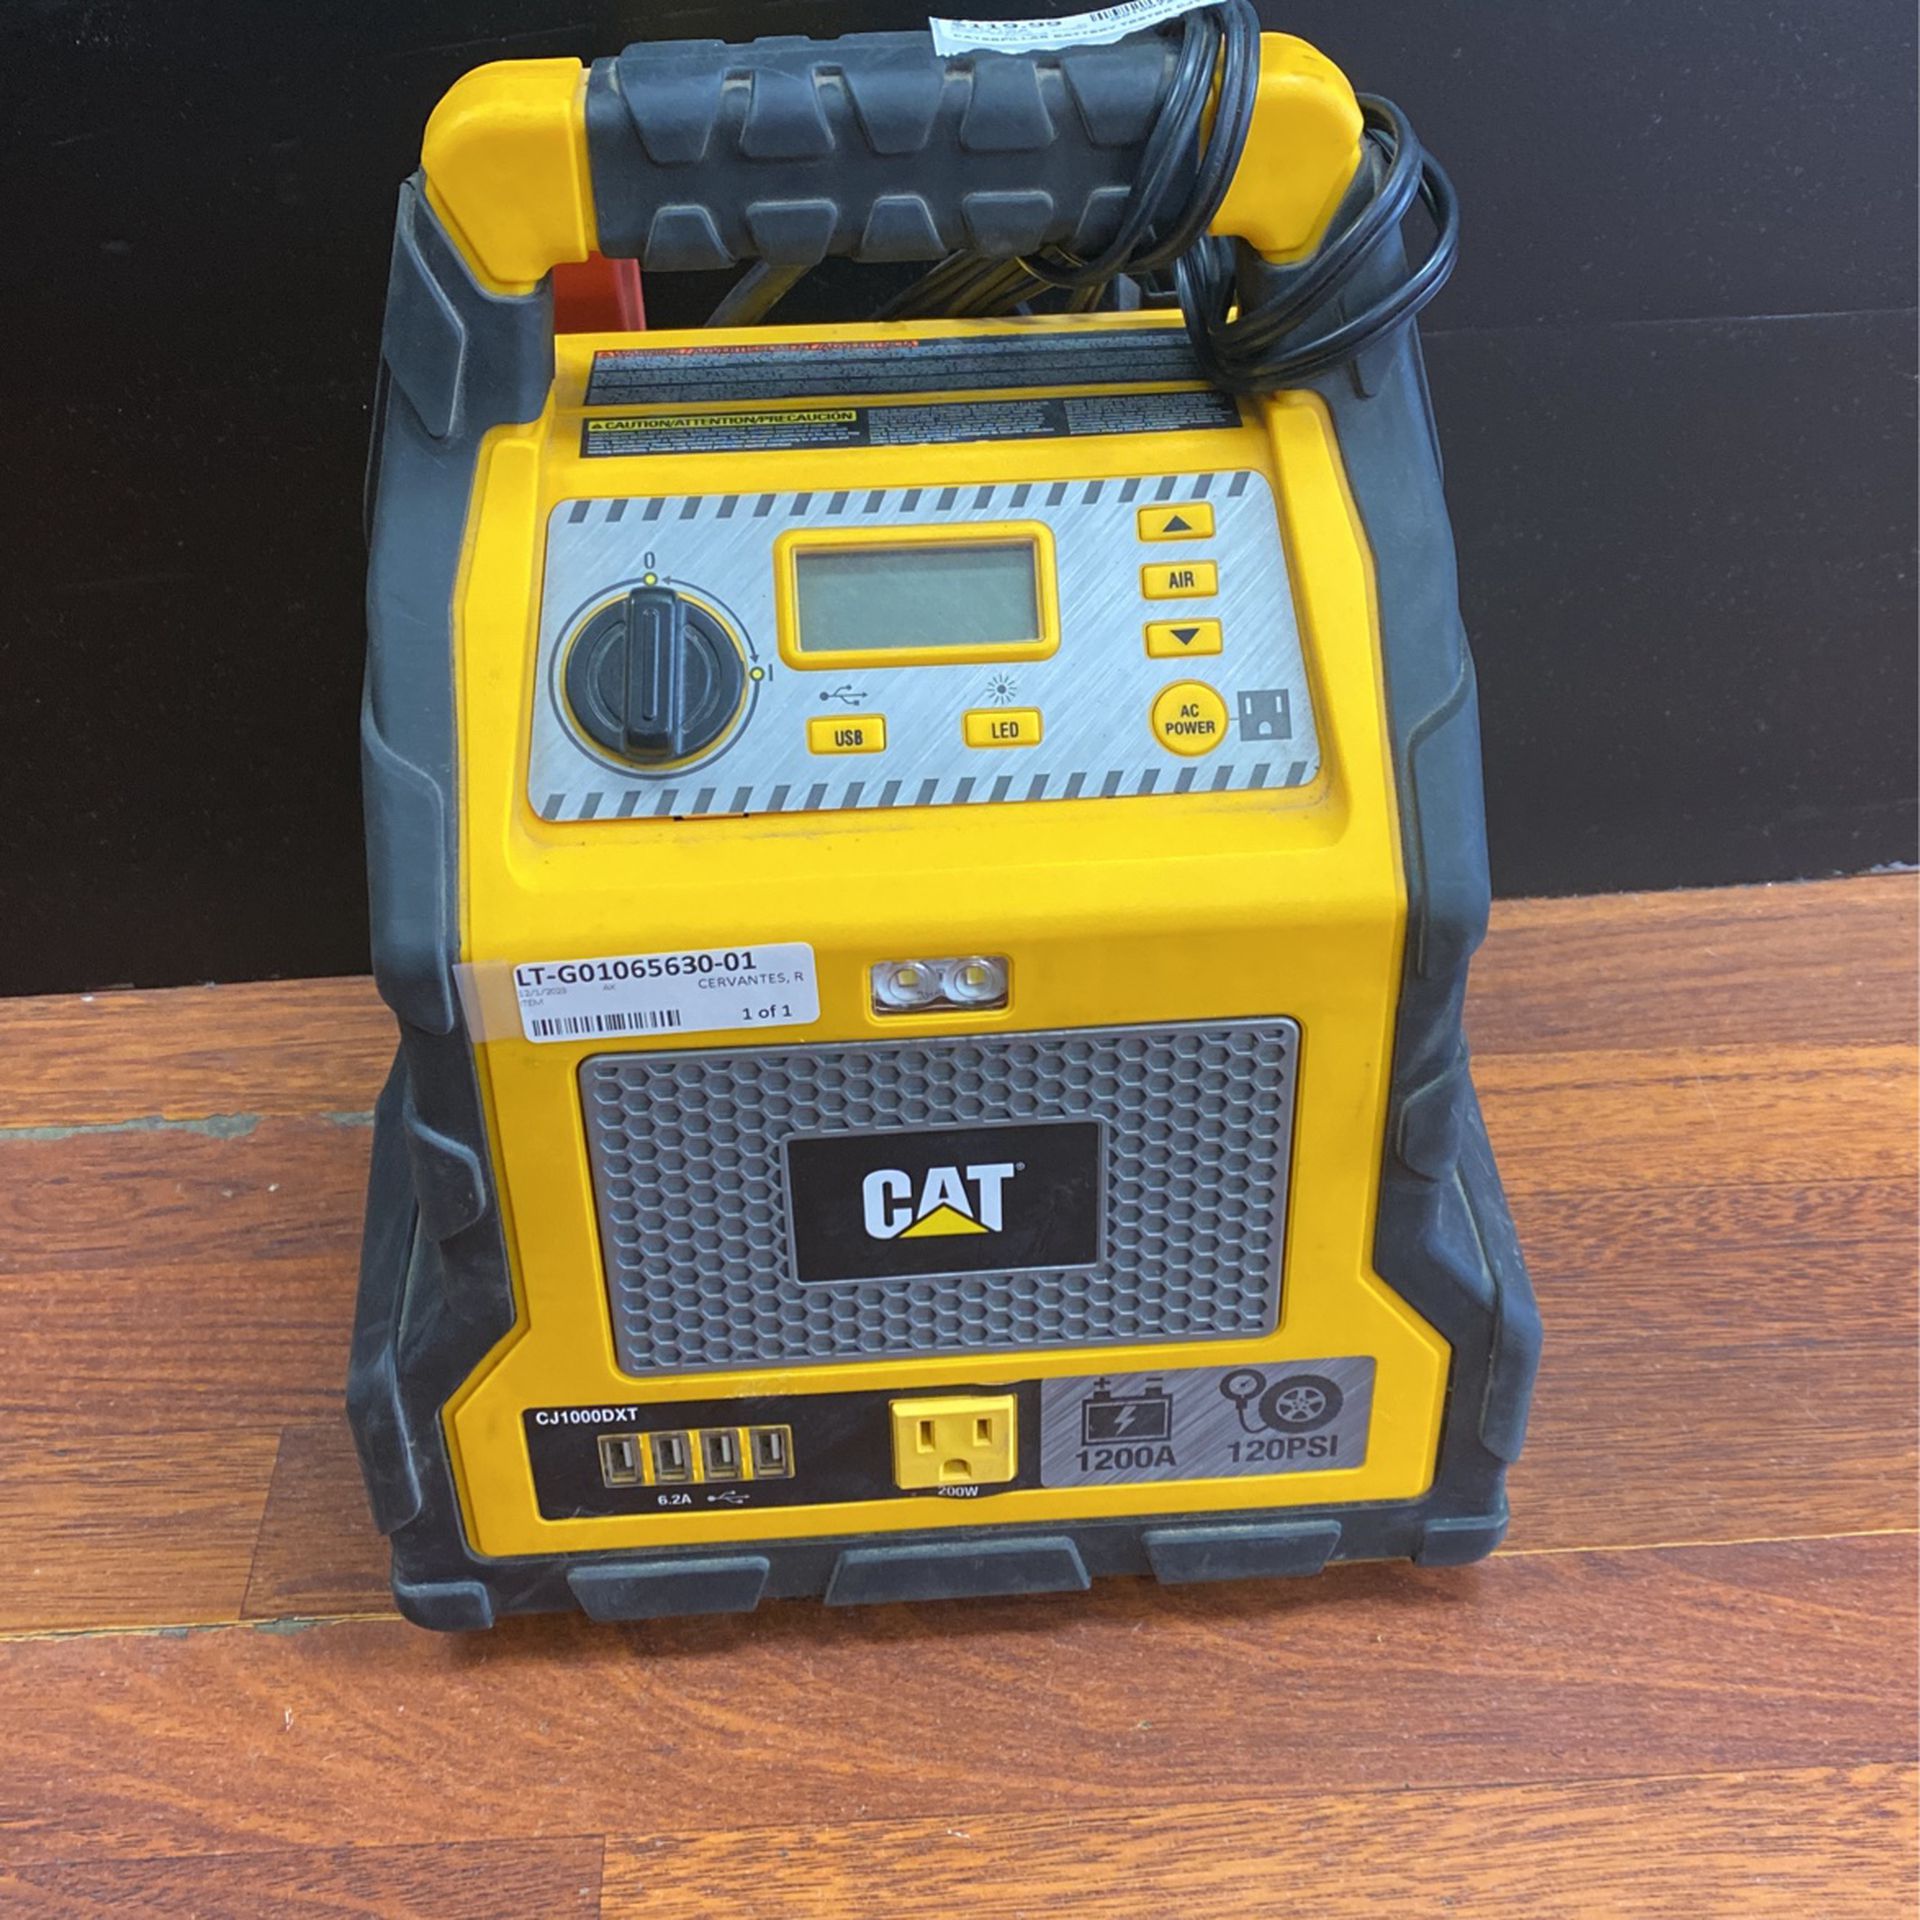 Cat Caterpillar Battery Tester CJ00